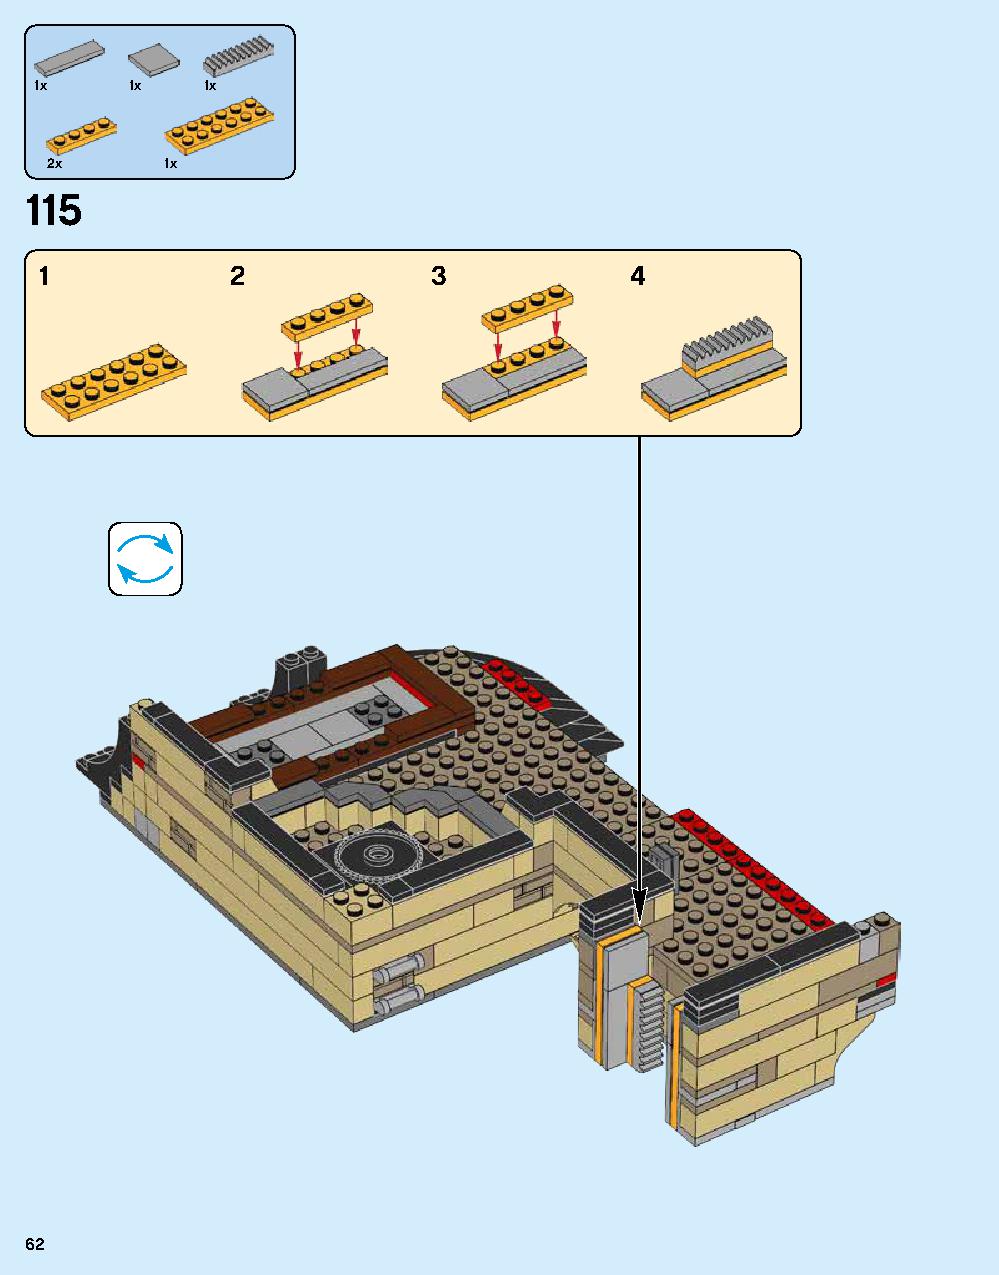 ニンジャゴー シティ 70620 レゴの商品情報 レゴの説明書・組立方法 62 page